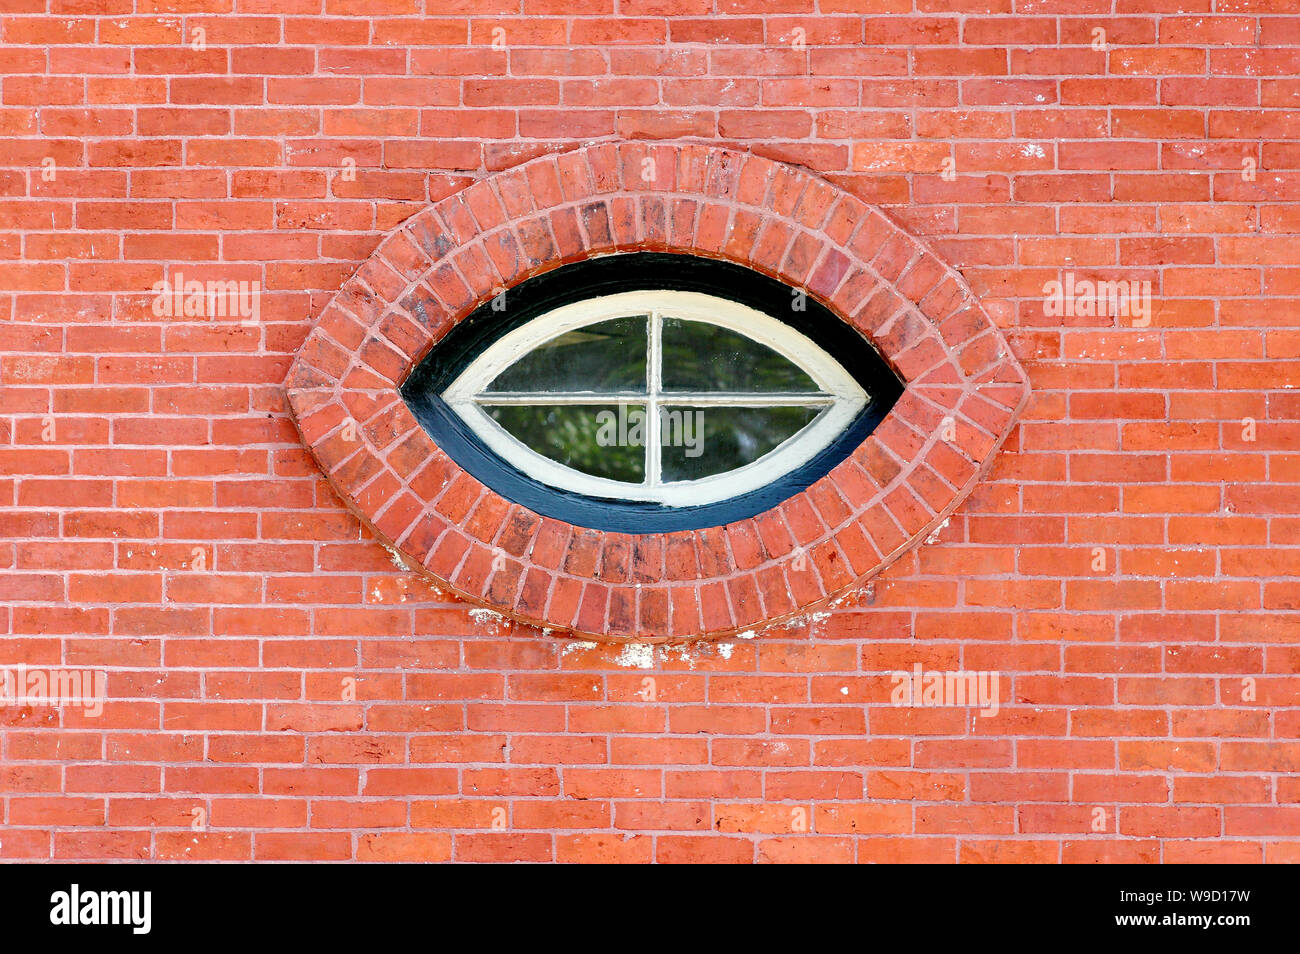 Ventana con forma de ojo de gato en una pared de ladrillo rojo Foto de stock